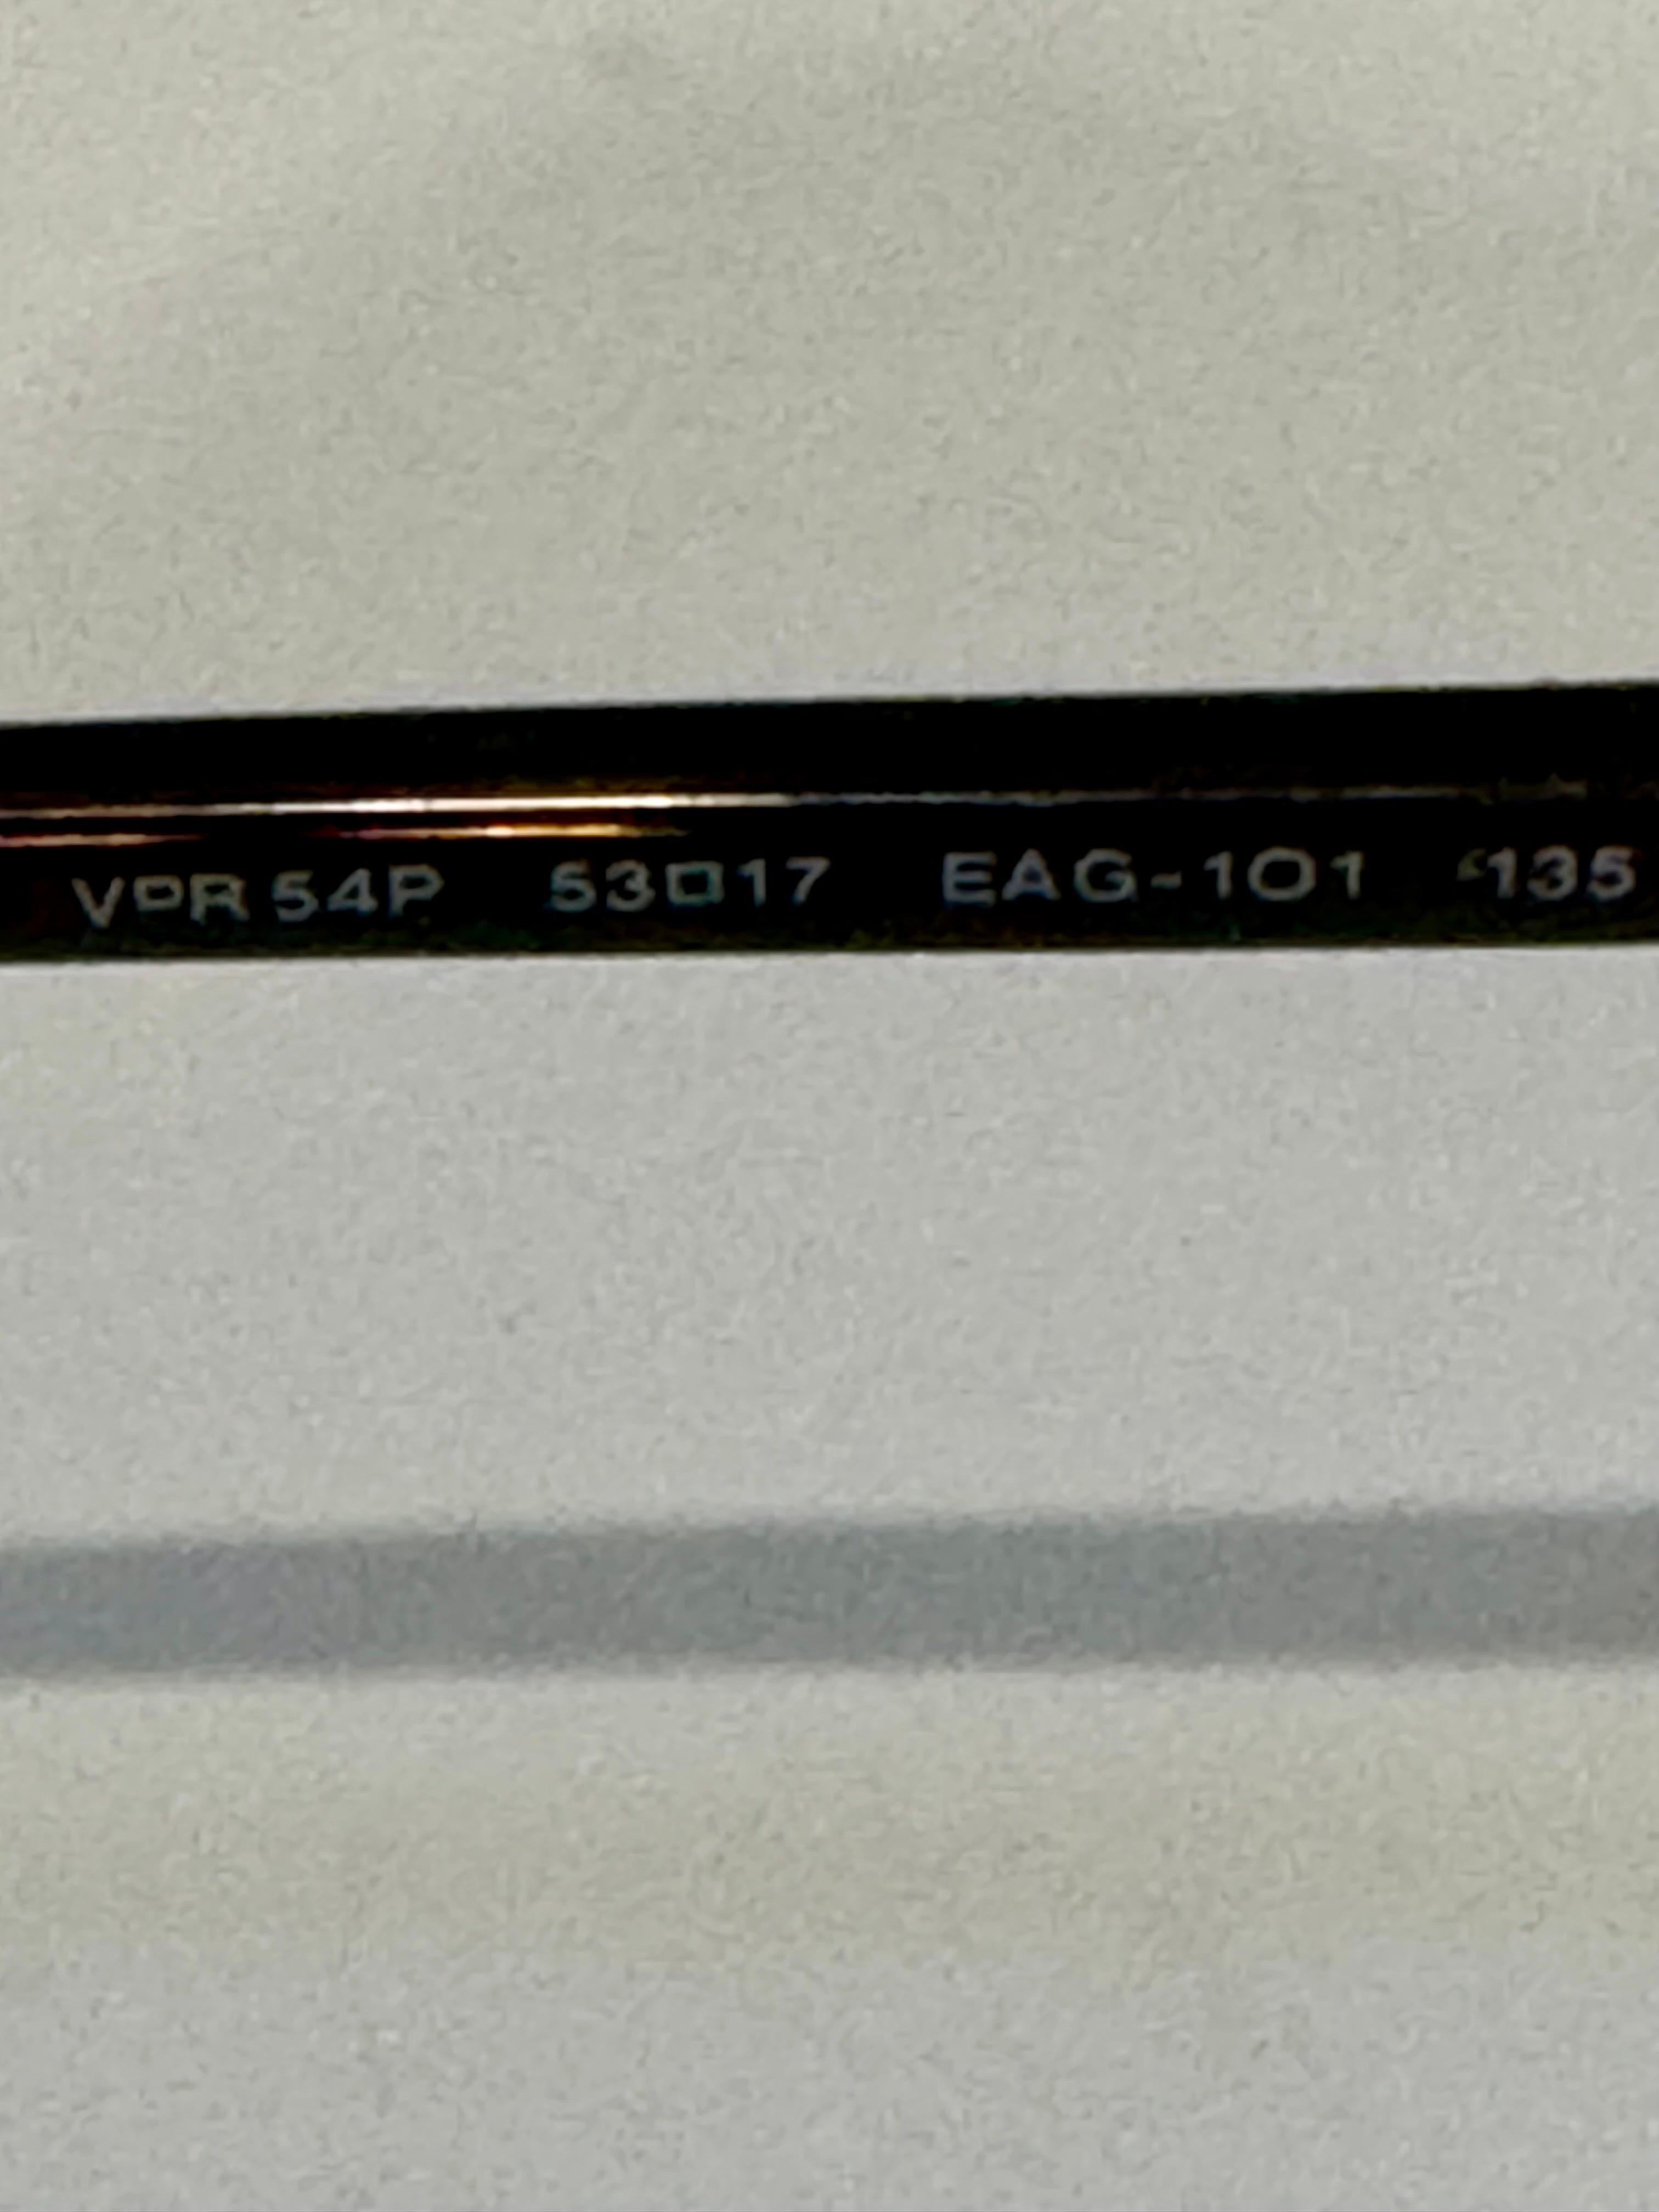 PRADA VPR 54P EAG-101 Cat Eye Eyeglasses Frames Matte Gold/Tortoise  3